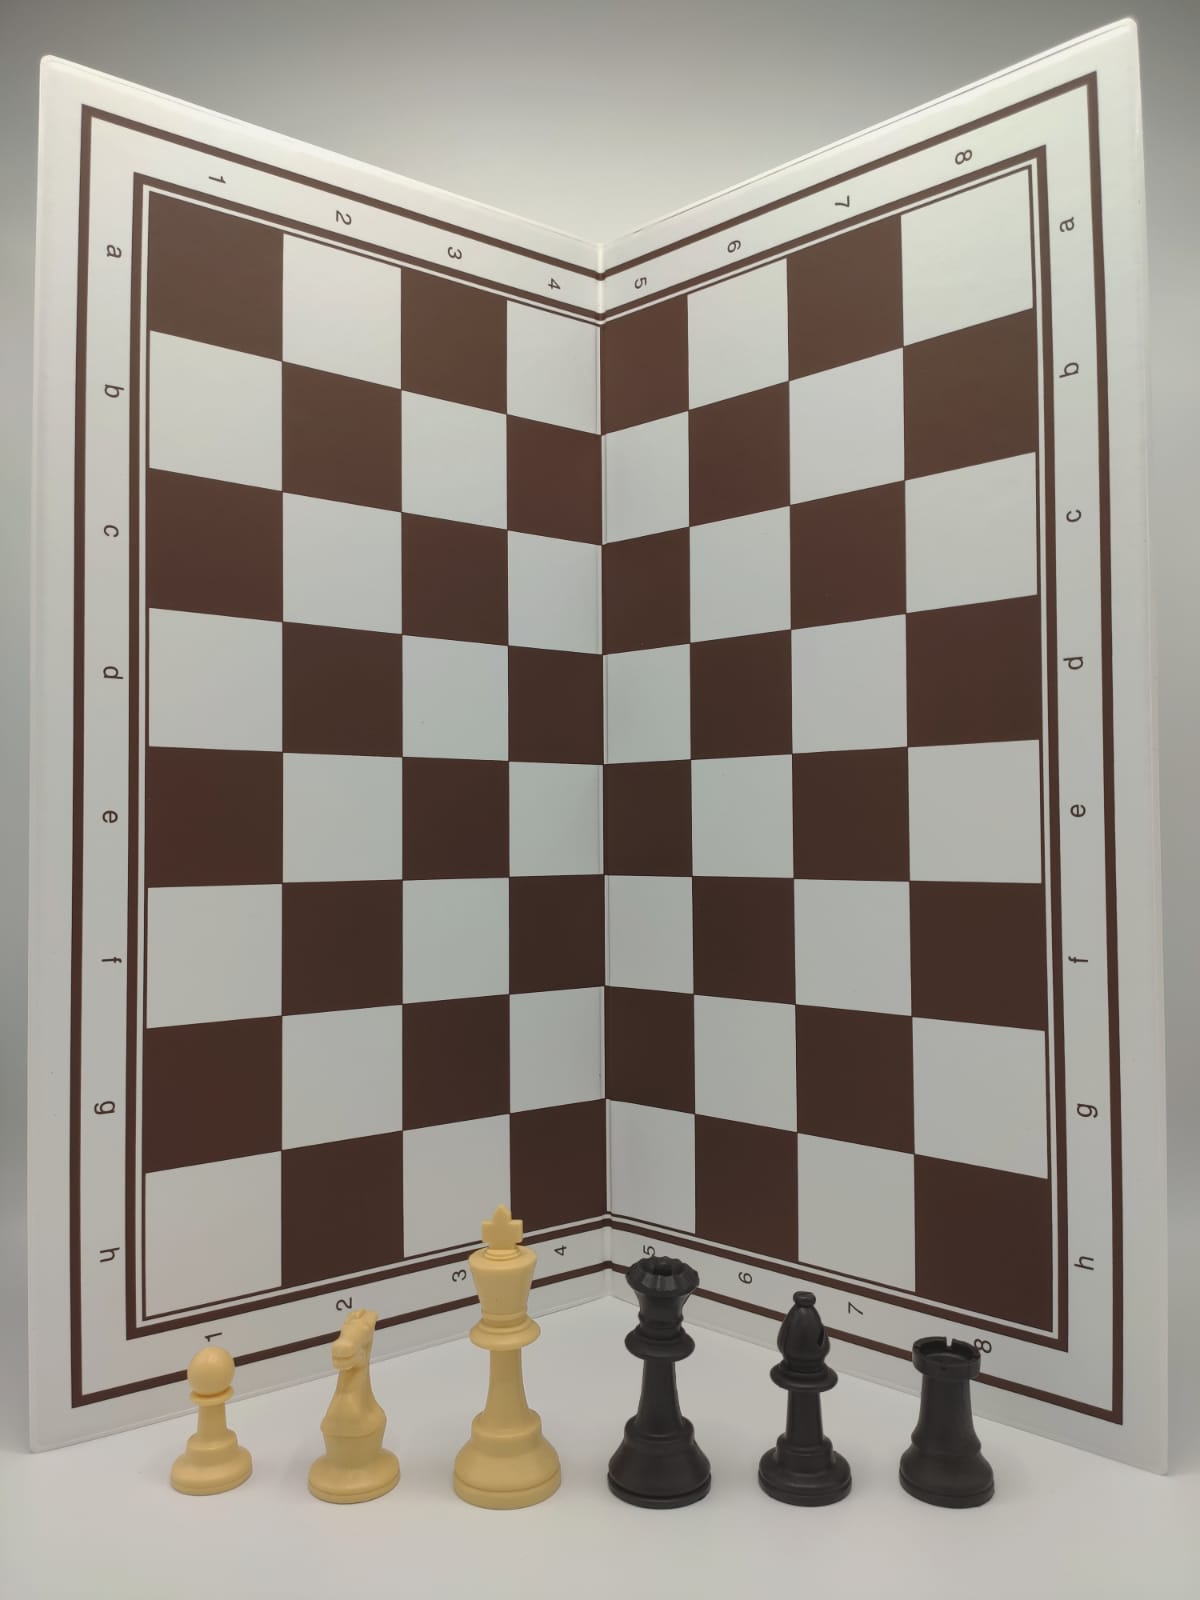 Complete schaakset voor beginners - Schaak en Gowinkel het Paard Spellen en Puzzels sinds 1987